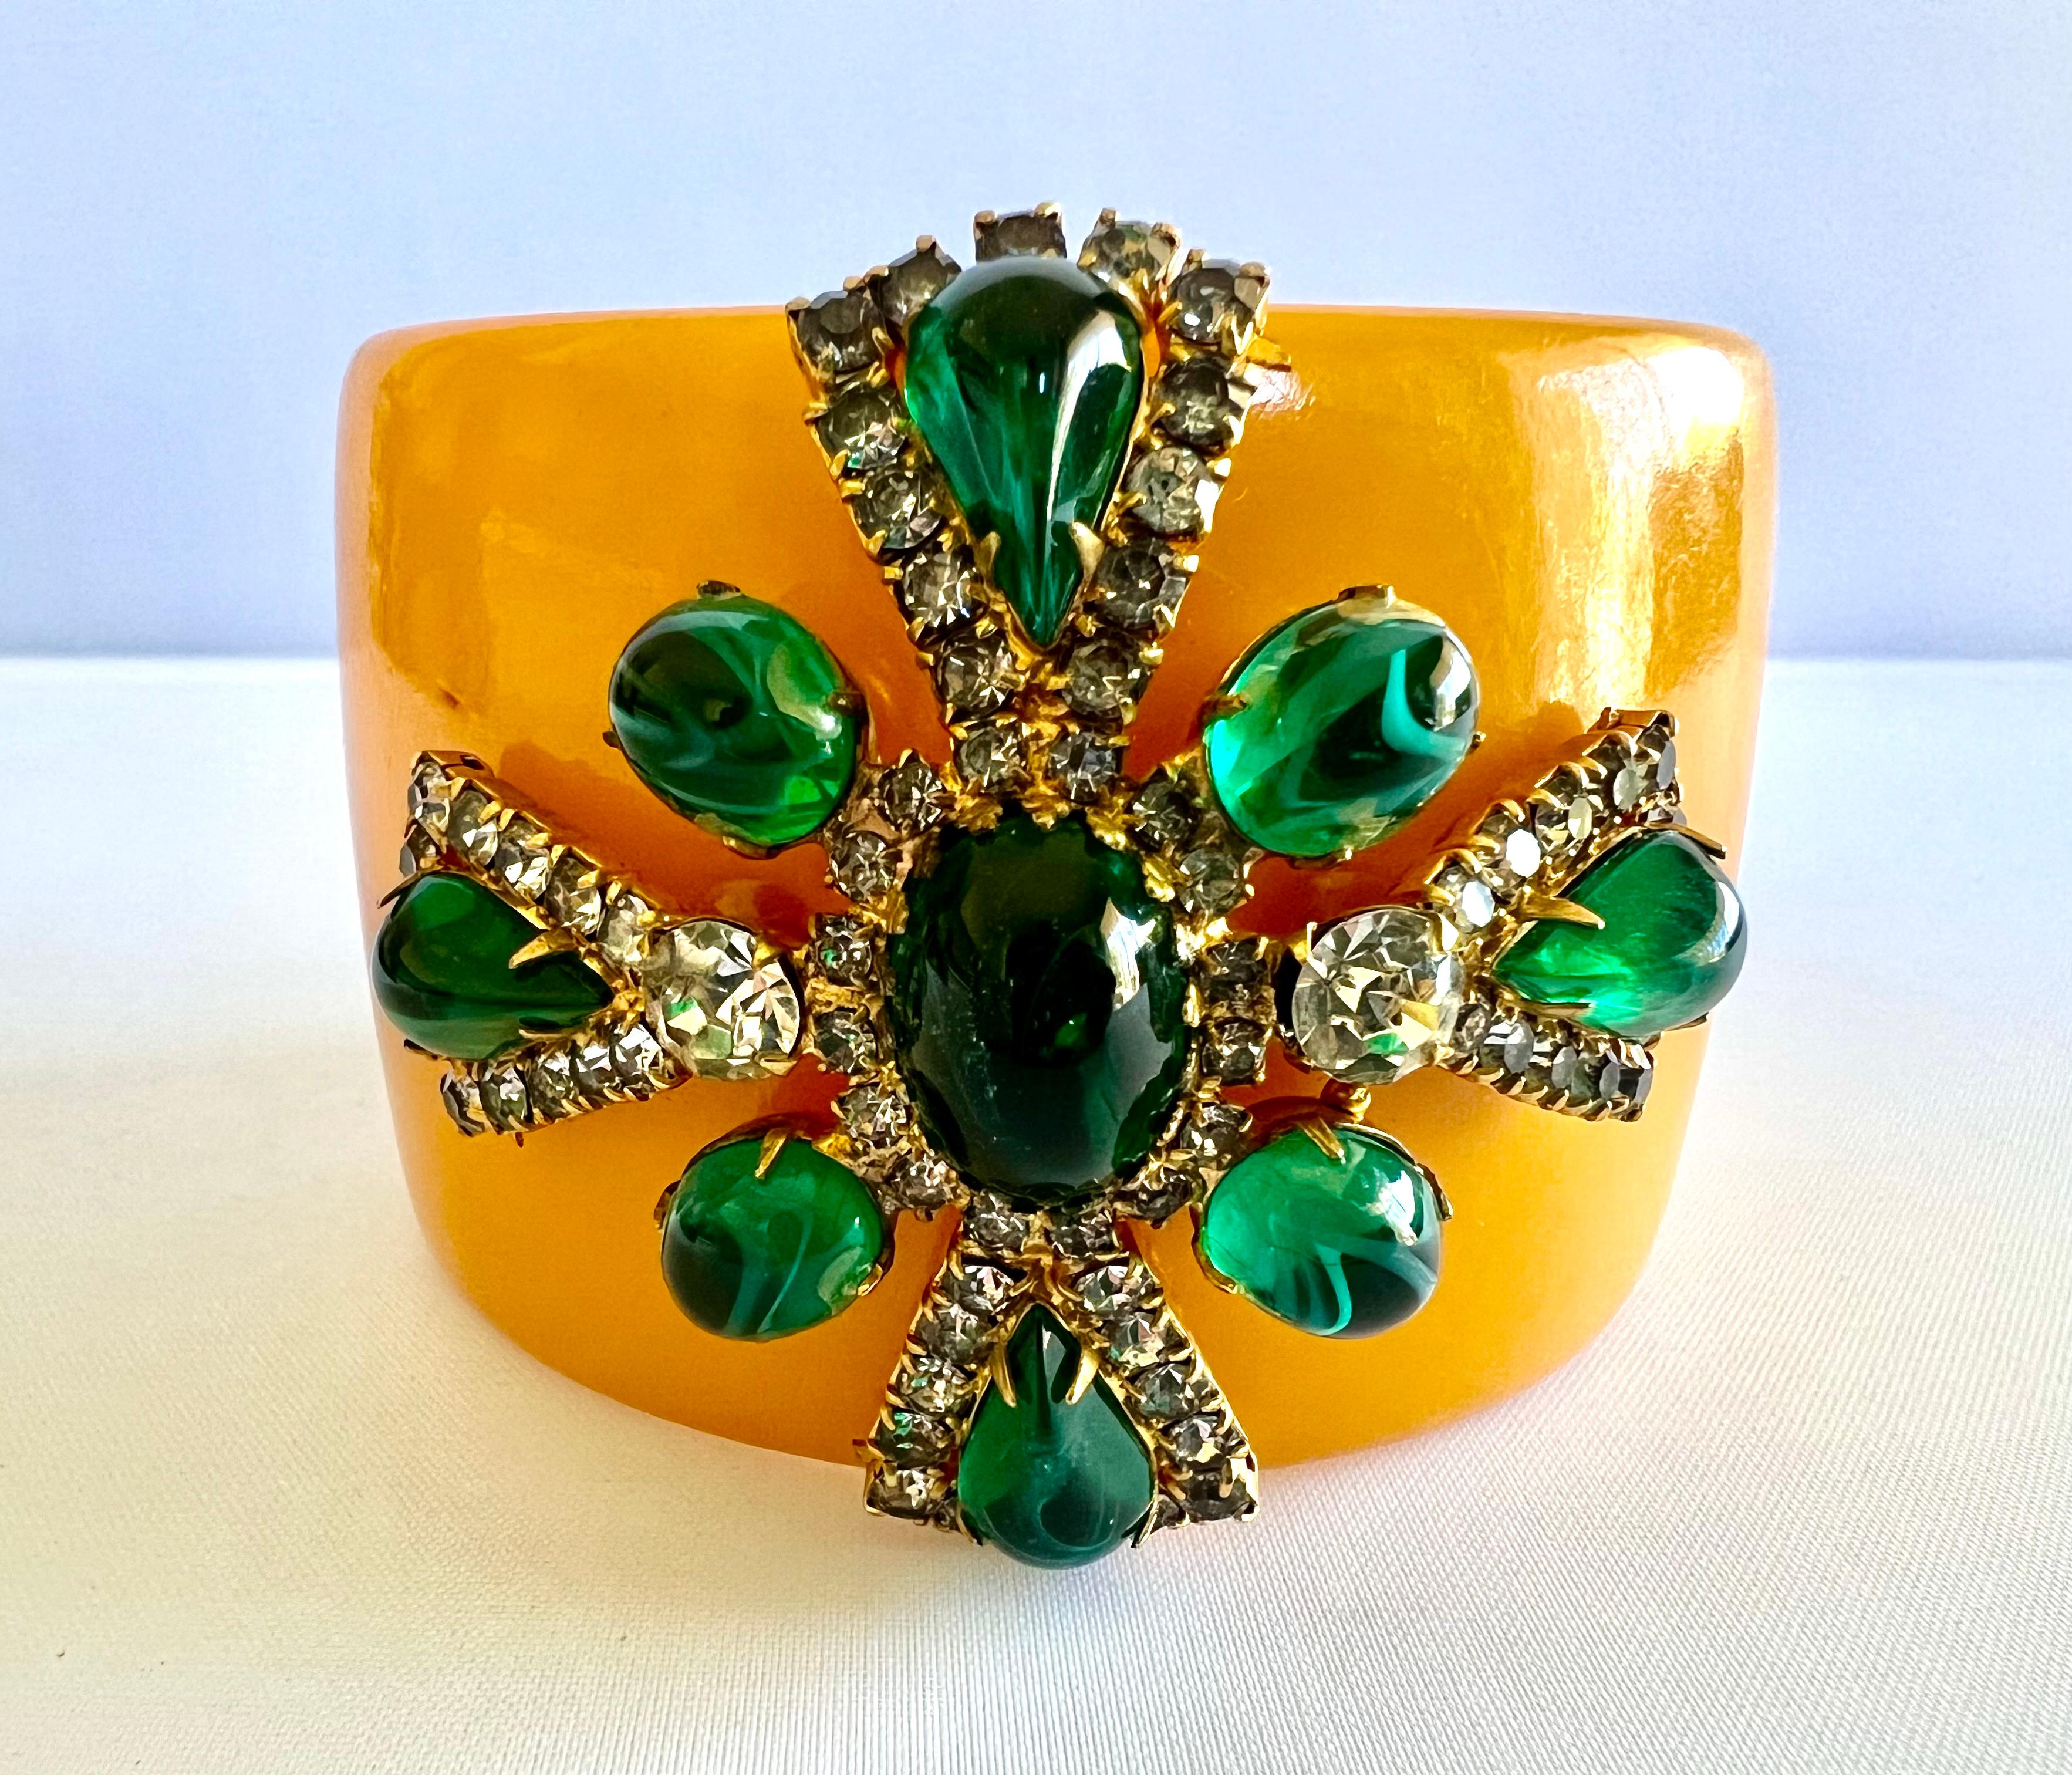 Armreif aus Bakelit mit Smaragden und Diamanten als Cabochons, akzentuiert durch ein großes Malteserkreuz. 